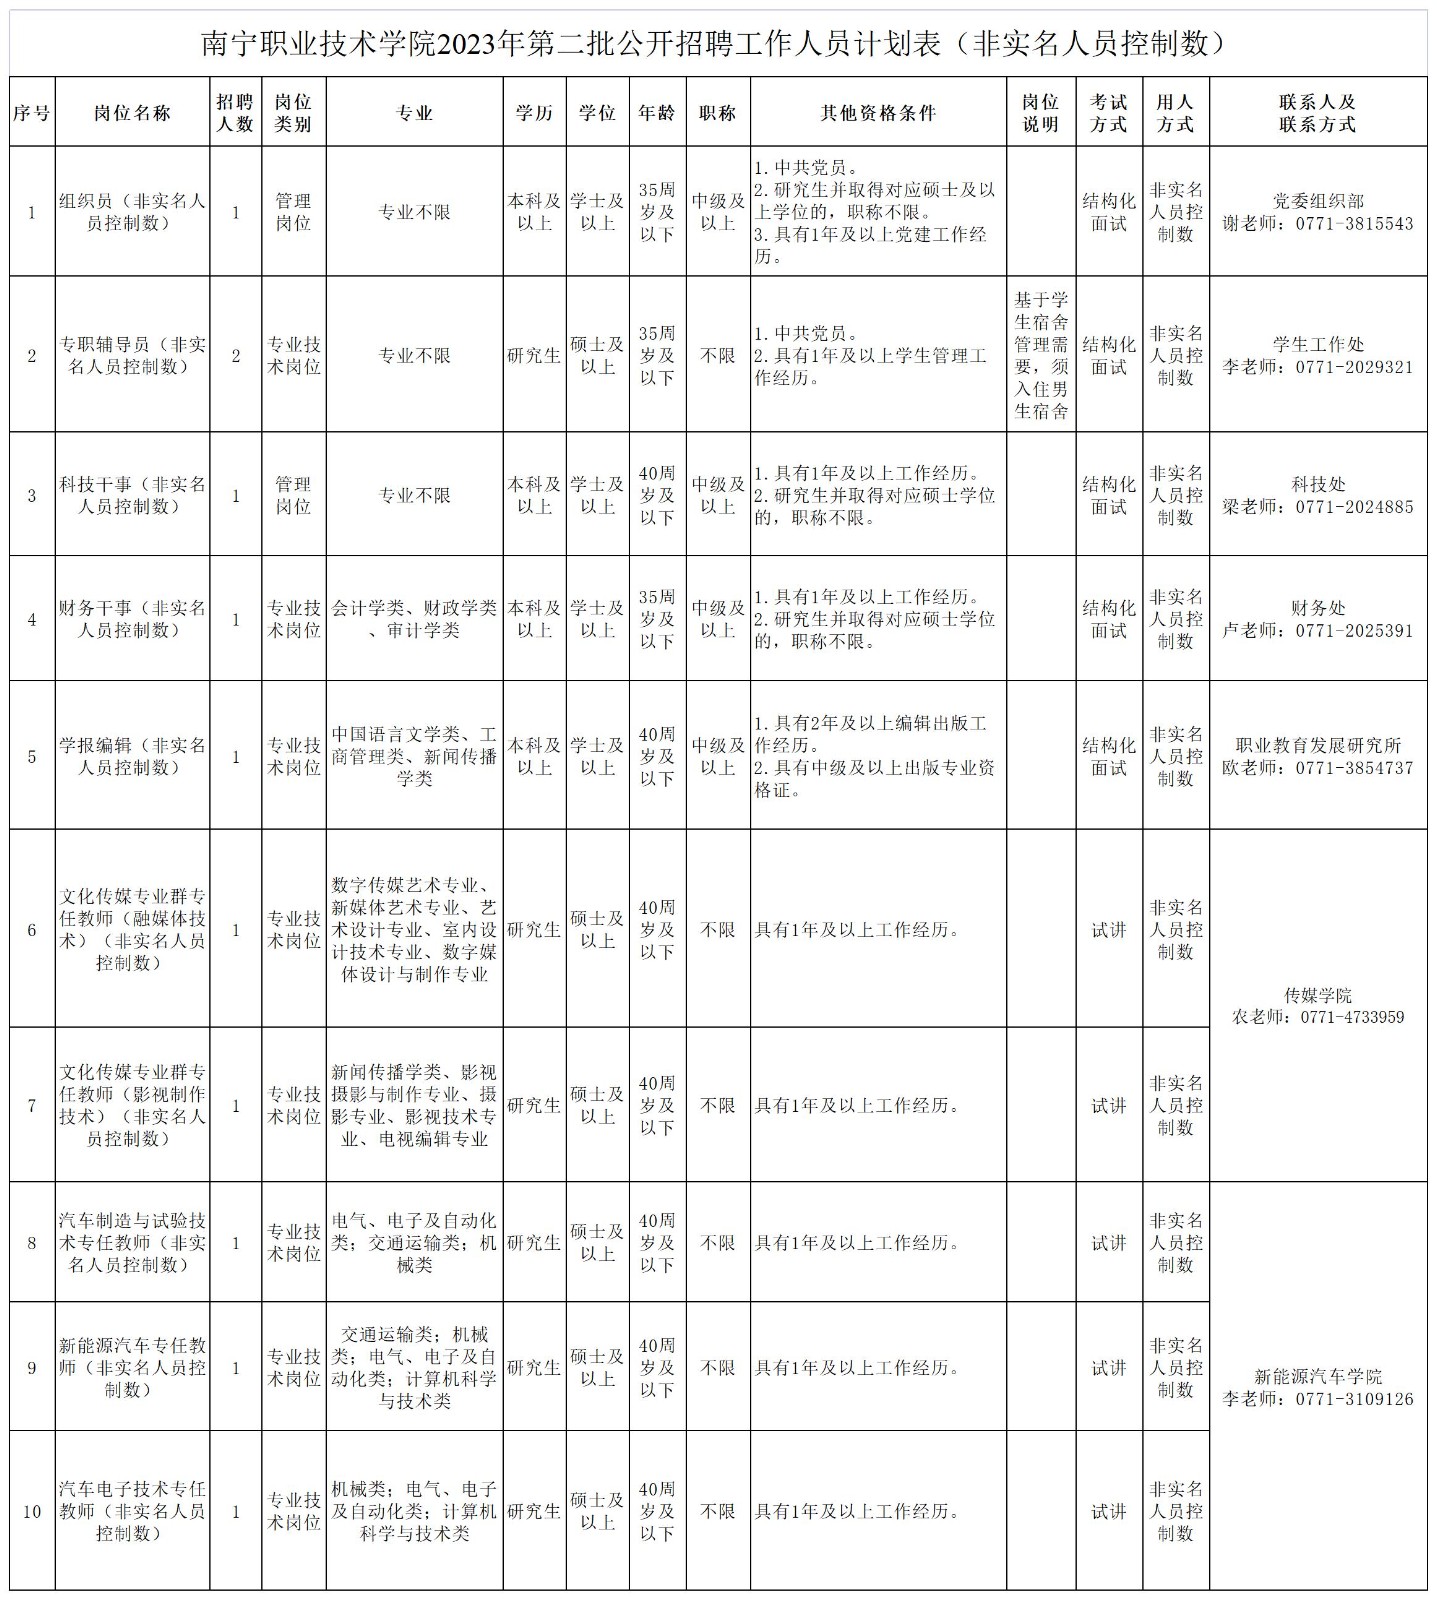 附件1：南宁职业技术学院2023年第二批公开招聘工作人员计划表（非实名人员控制数）_Sheet1.jpg